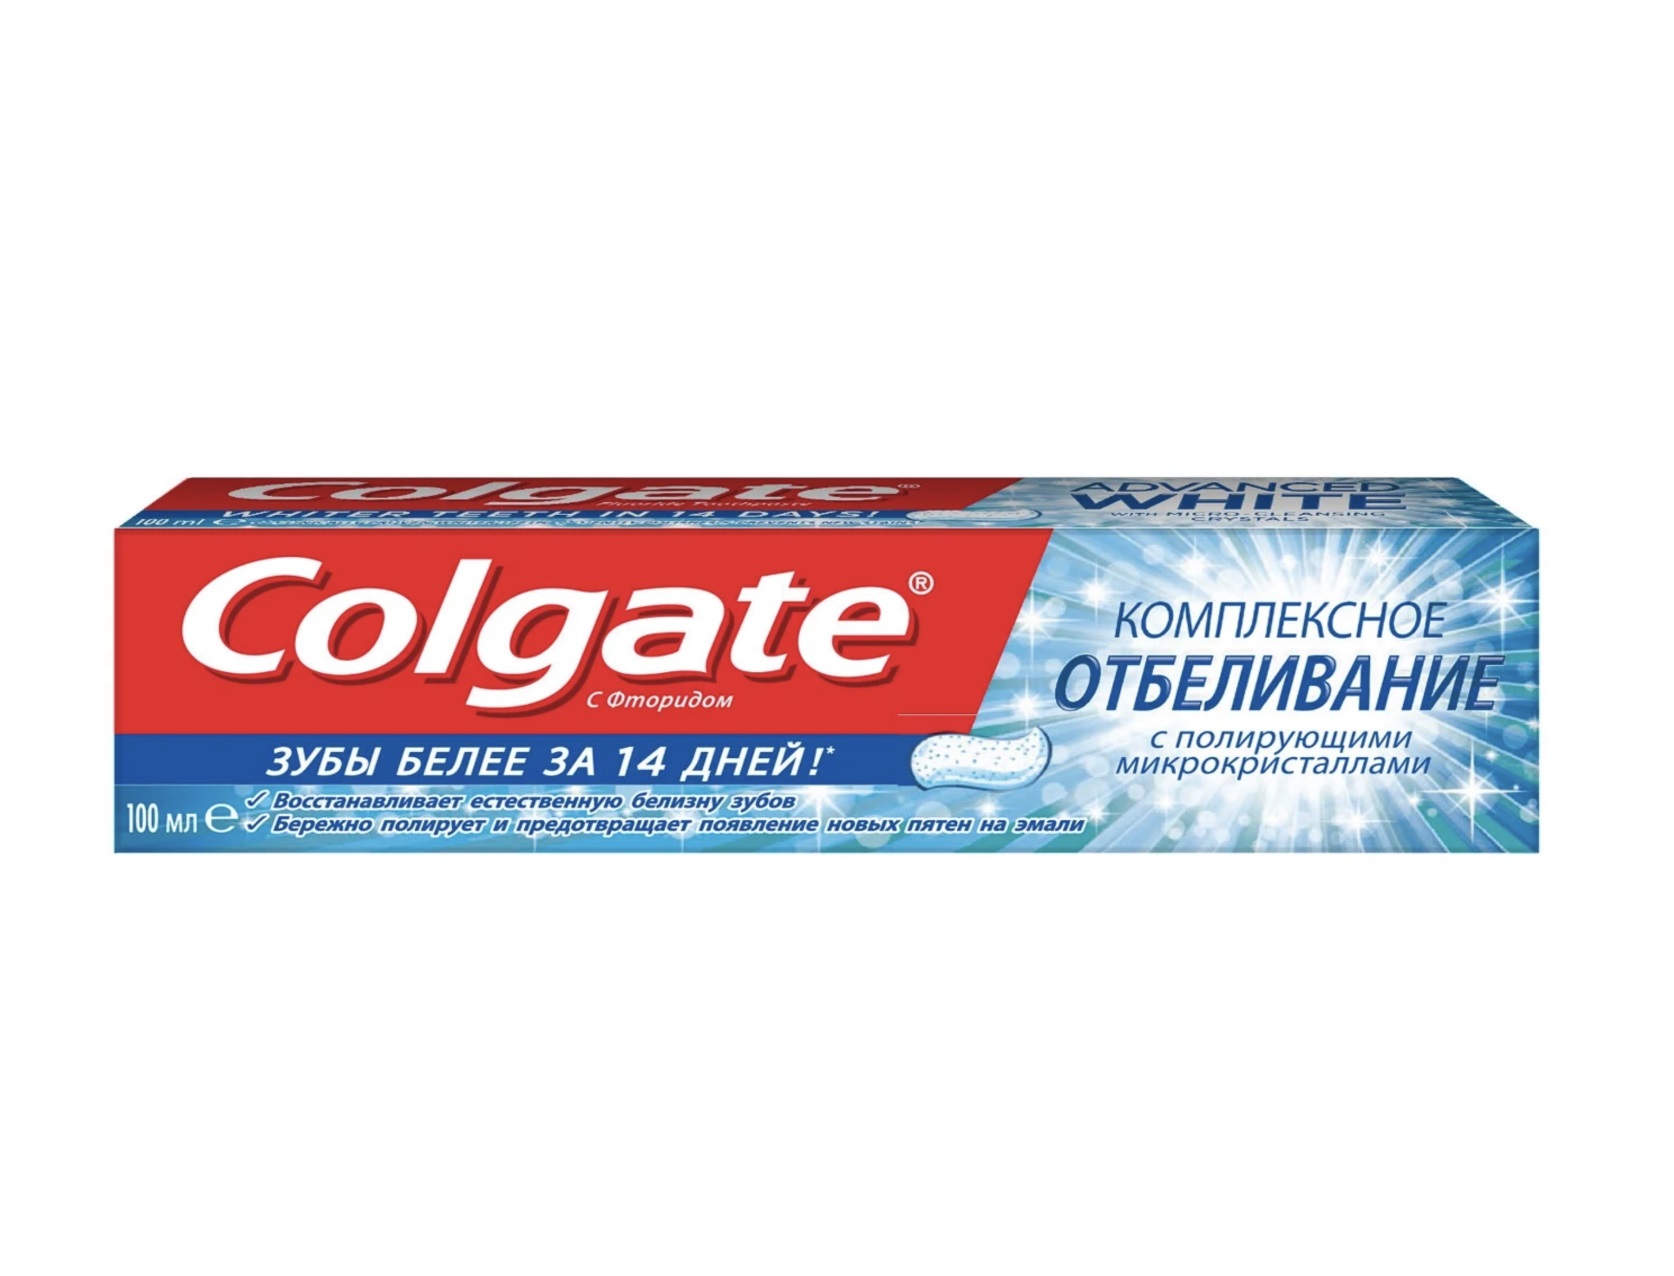 Colgate зубная паста комплексное отбеливание, 100 мл